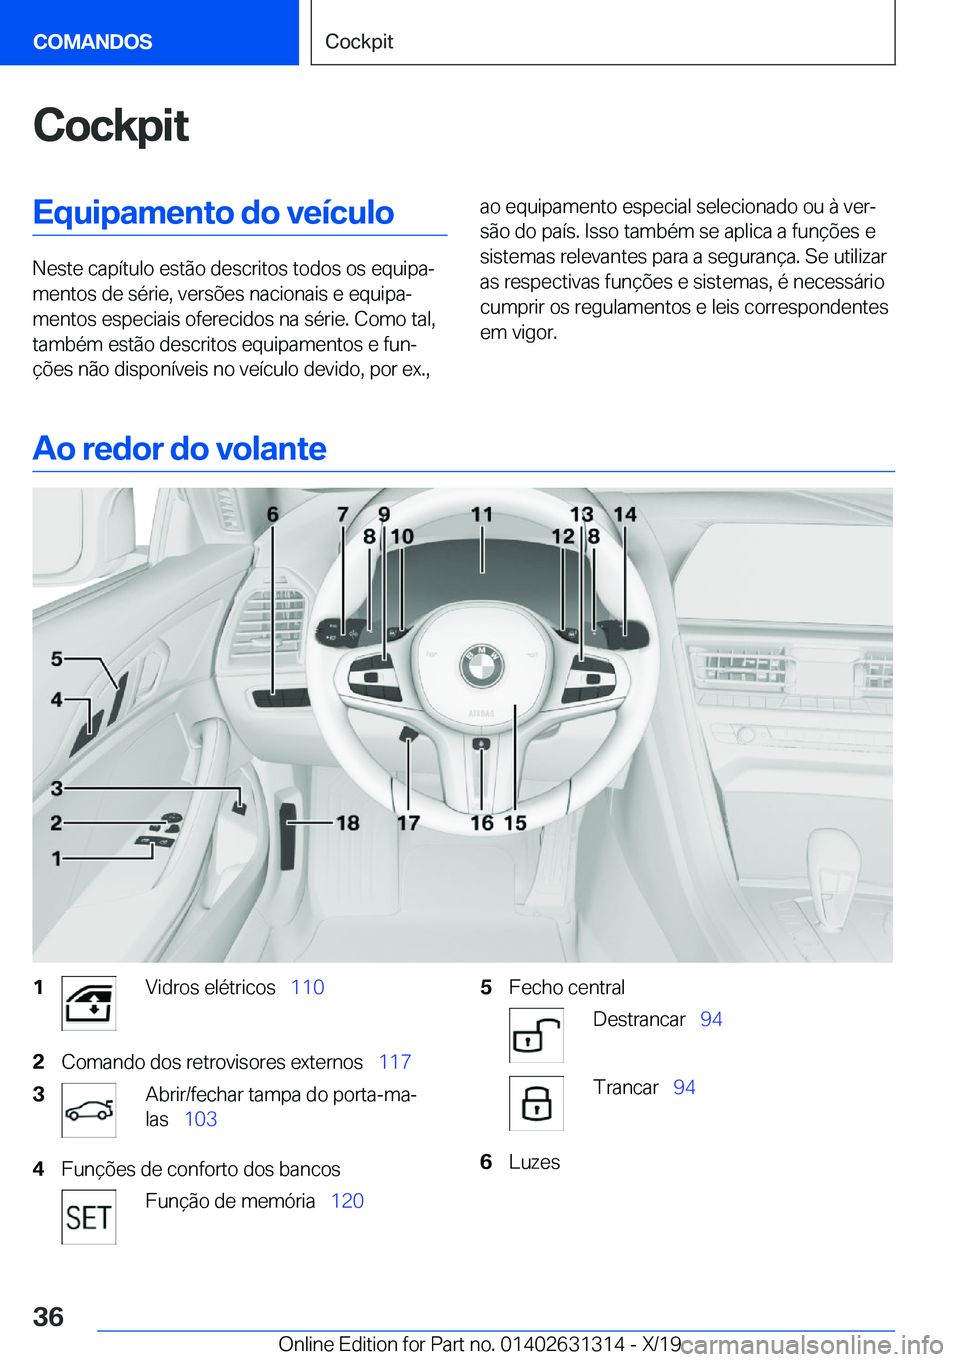 BMW M8 2020  Manual do condutor (in Portuguese) �C�o�c�k�p�i�t�E�q�u�i�p�a�m�e�n�t�o��d�o��v�e�